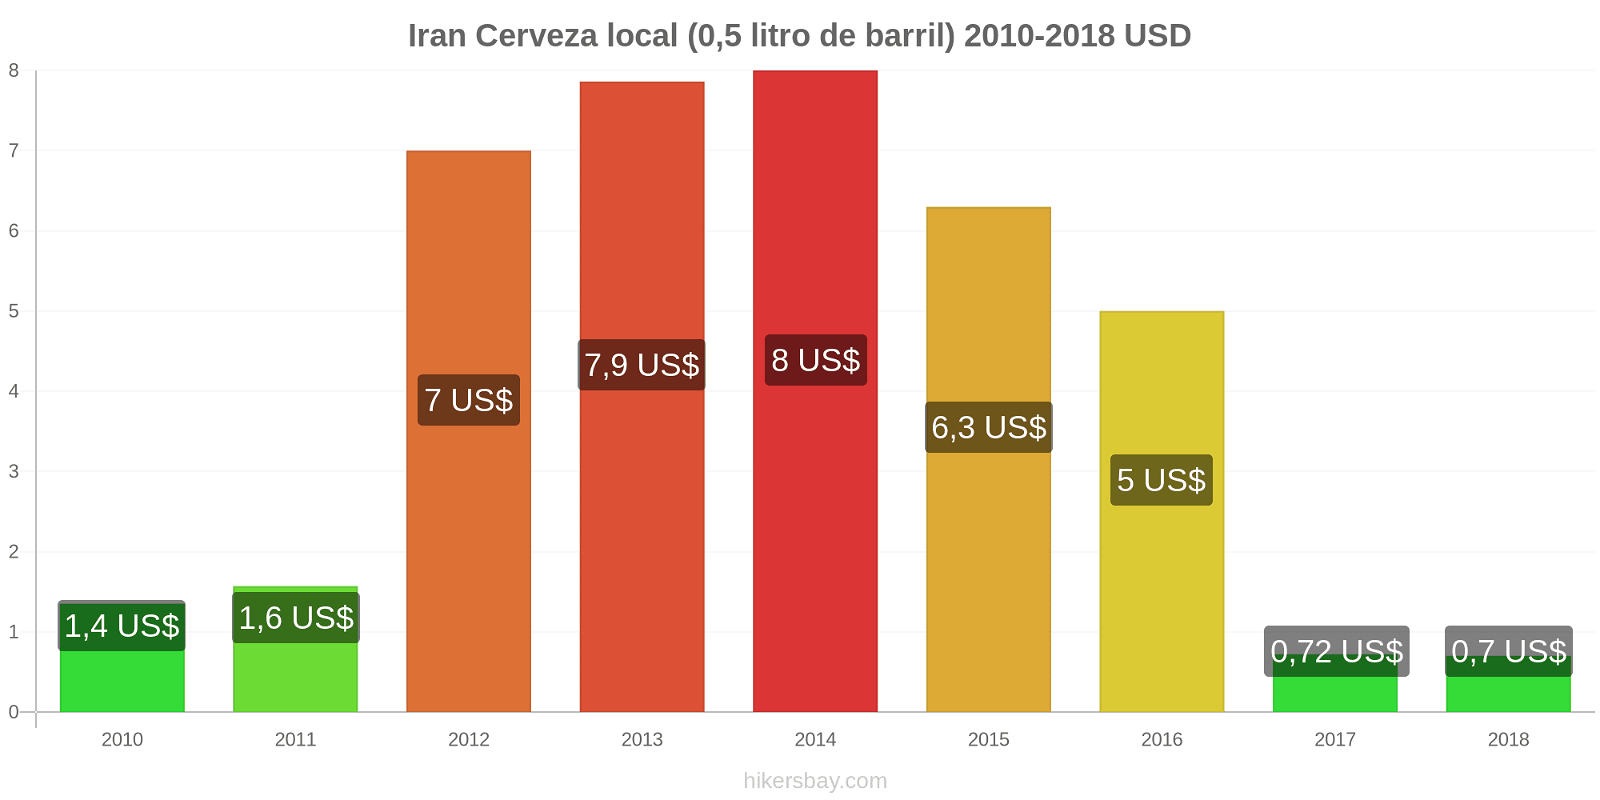 Iran cambios de precios Cerveza de barril (0,5 litros) hikersbay.com